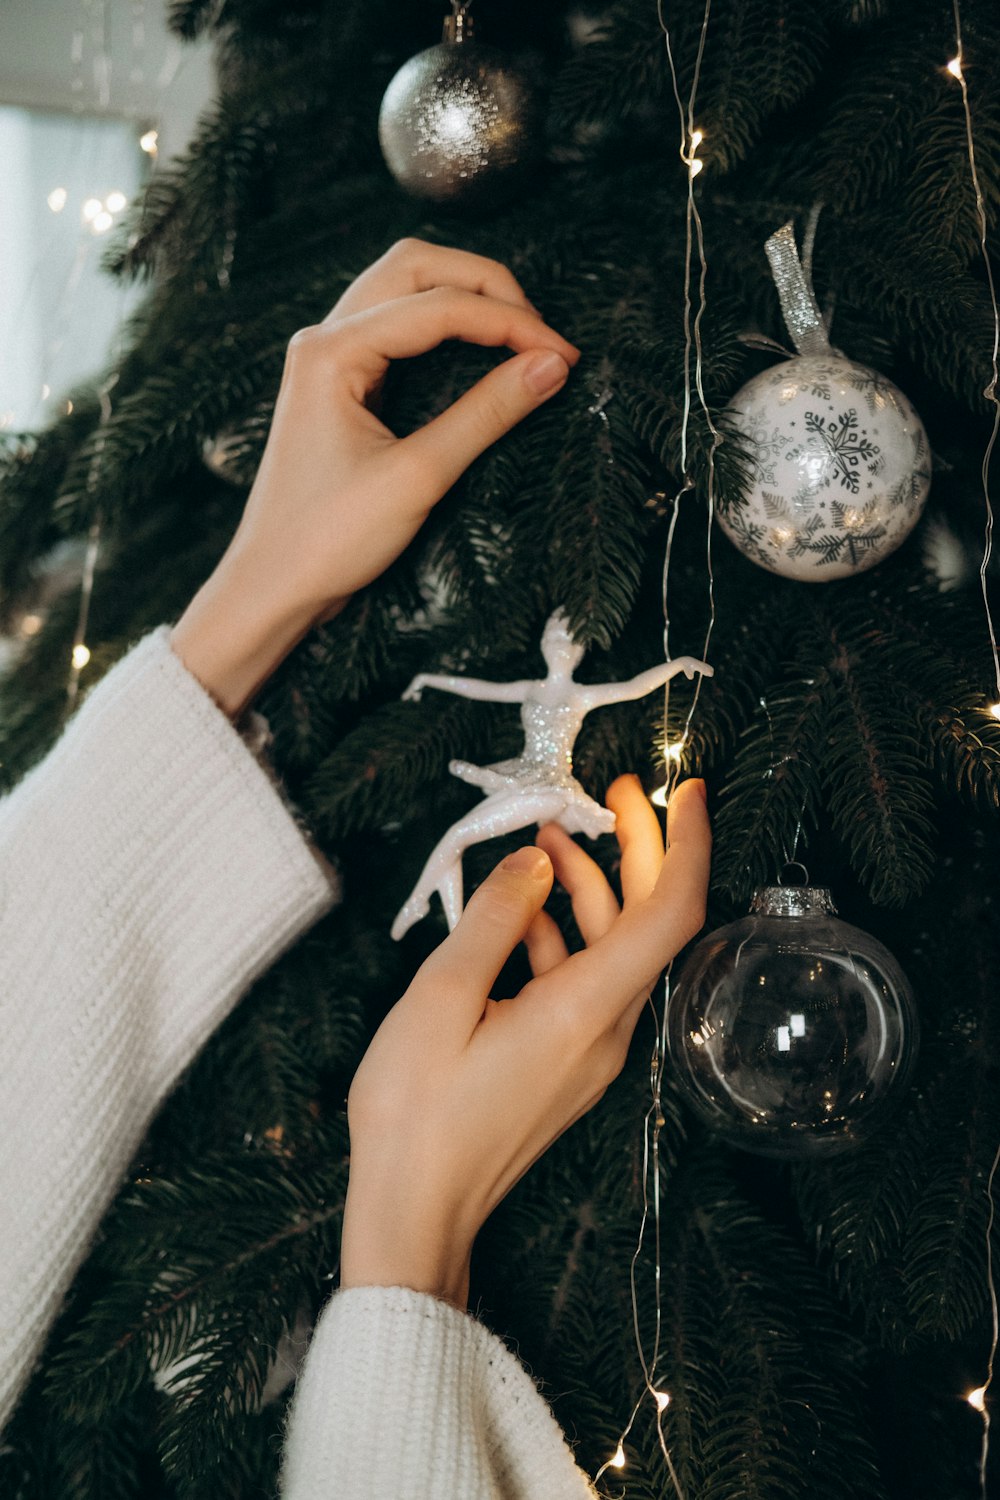 Una persona decorando un árbol de Navidad con adornos